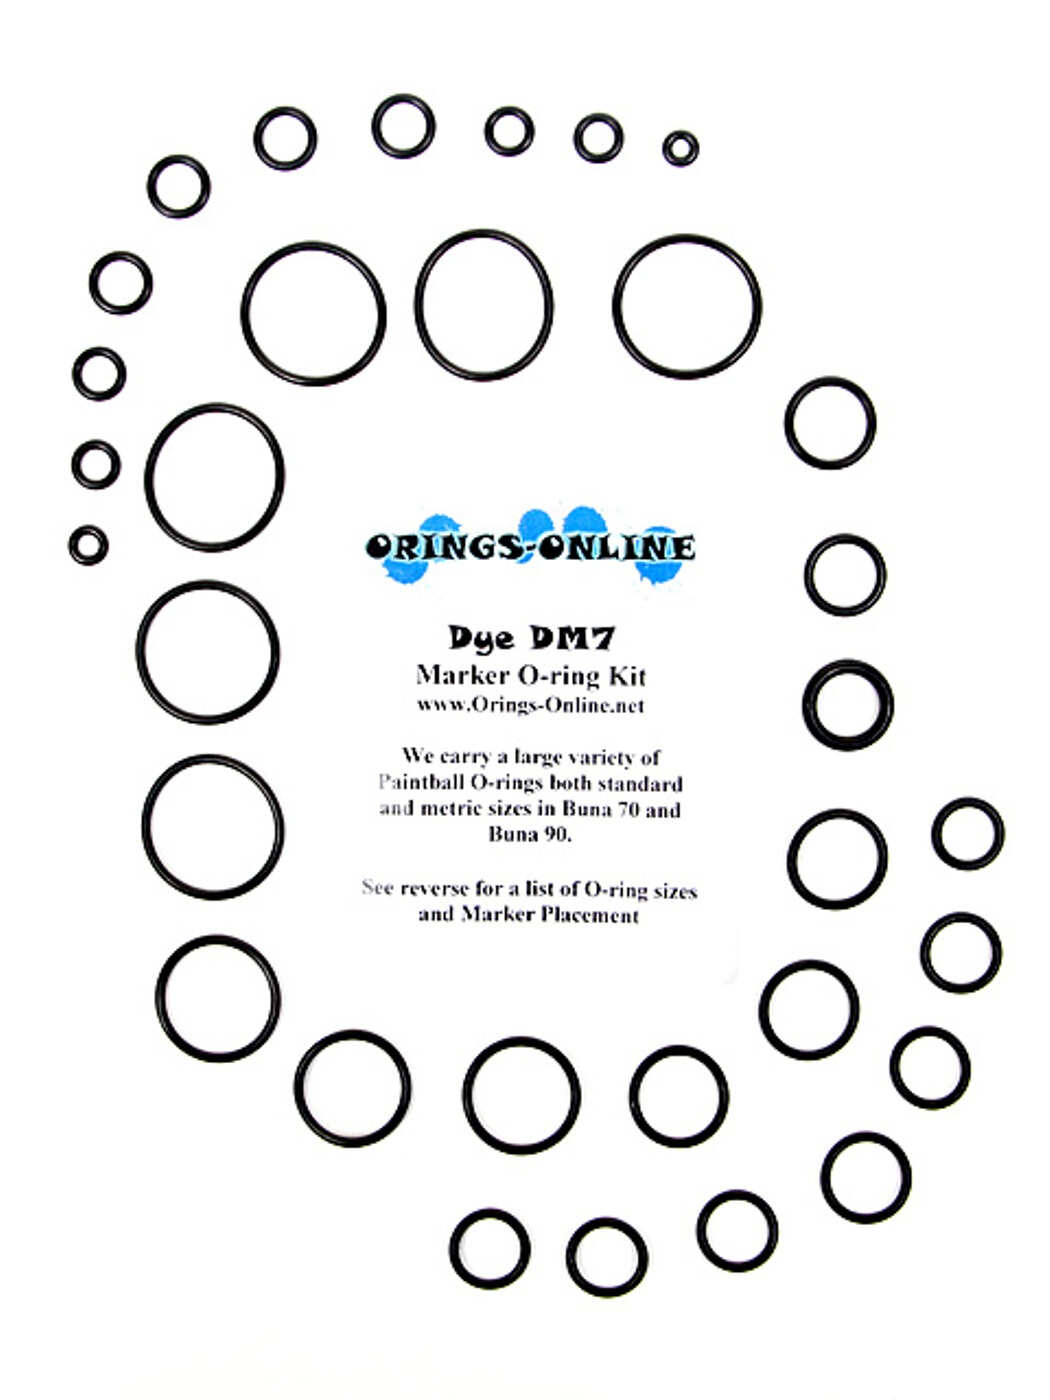 Dye DM5 Paintball Marker O-ring Oring Kit x 4 rebuilds kits 